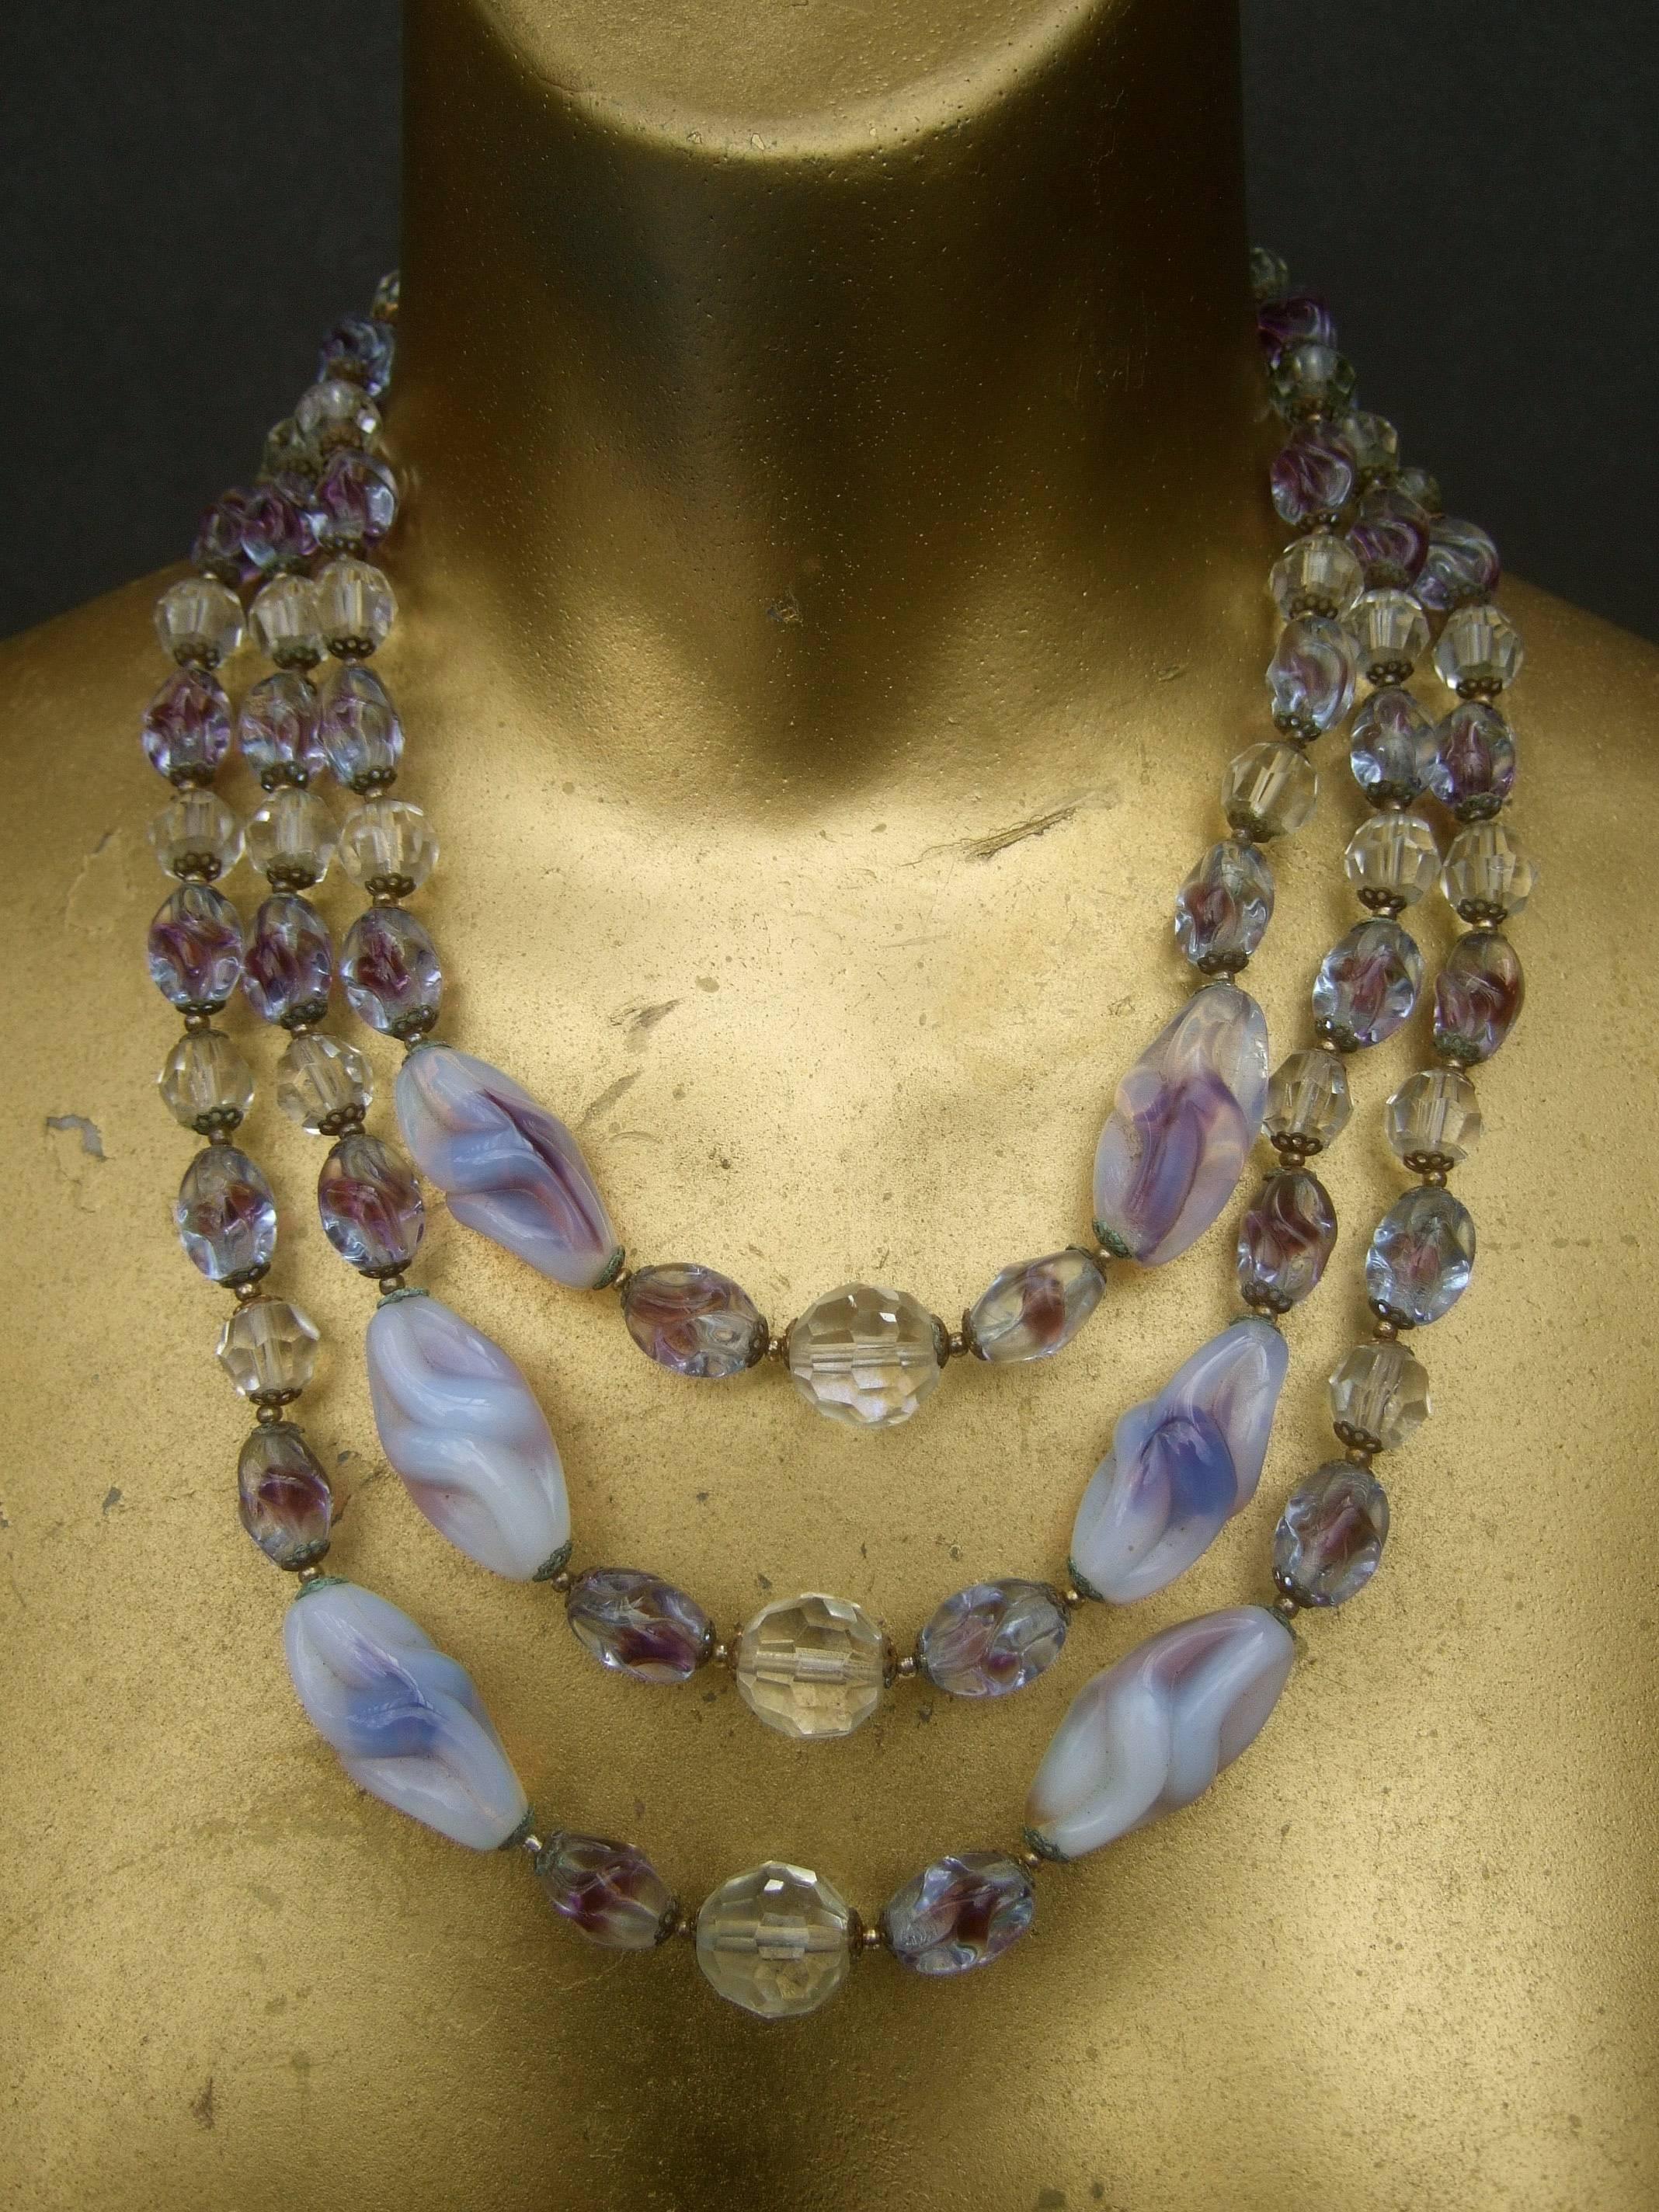 Glitzernde Kristallglasperlenkette, abgestuft, um 1960
Die elegante Halskette ist mit drei abgestuften  
reihen von blass lavendelfarbenen, milchigen, opalfarbenen, länglichen Glasperlen

Nebeneinander mit klarsichtigen Kristallperlen in